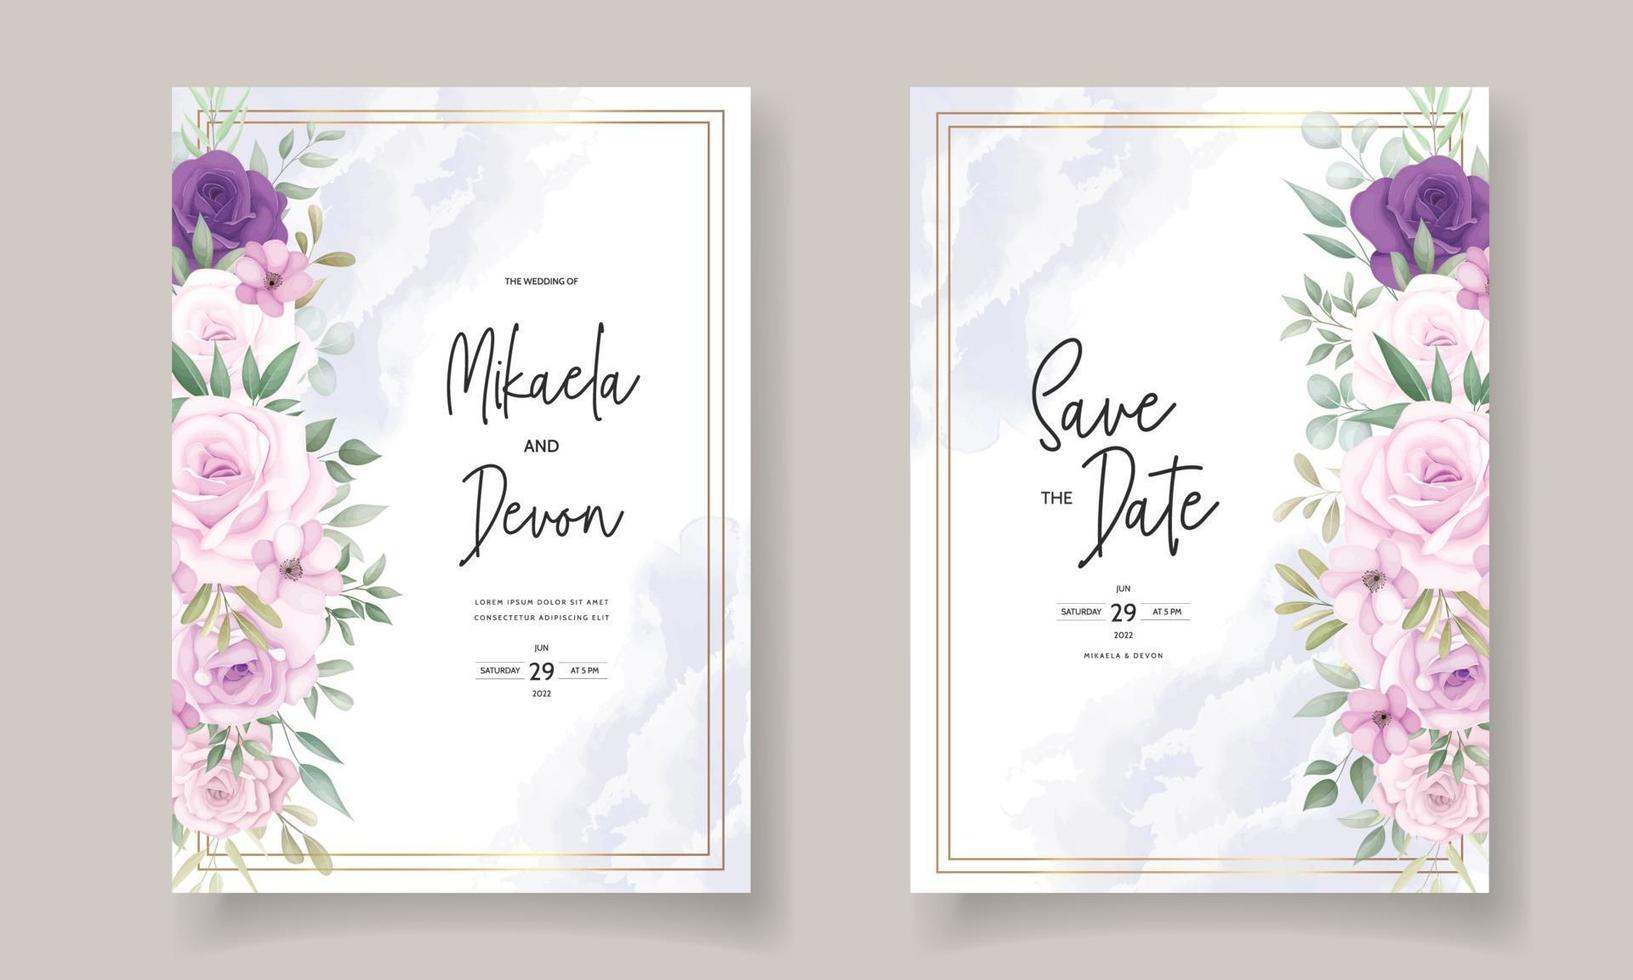 lindos designs de convites de casamento com lindos enfeites de flores vetor